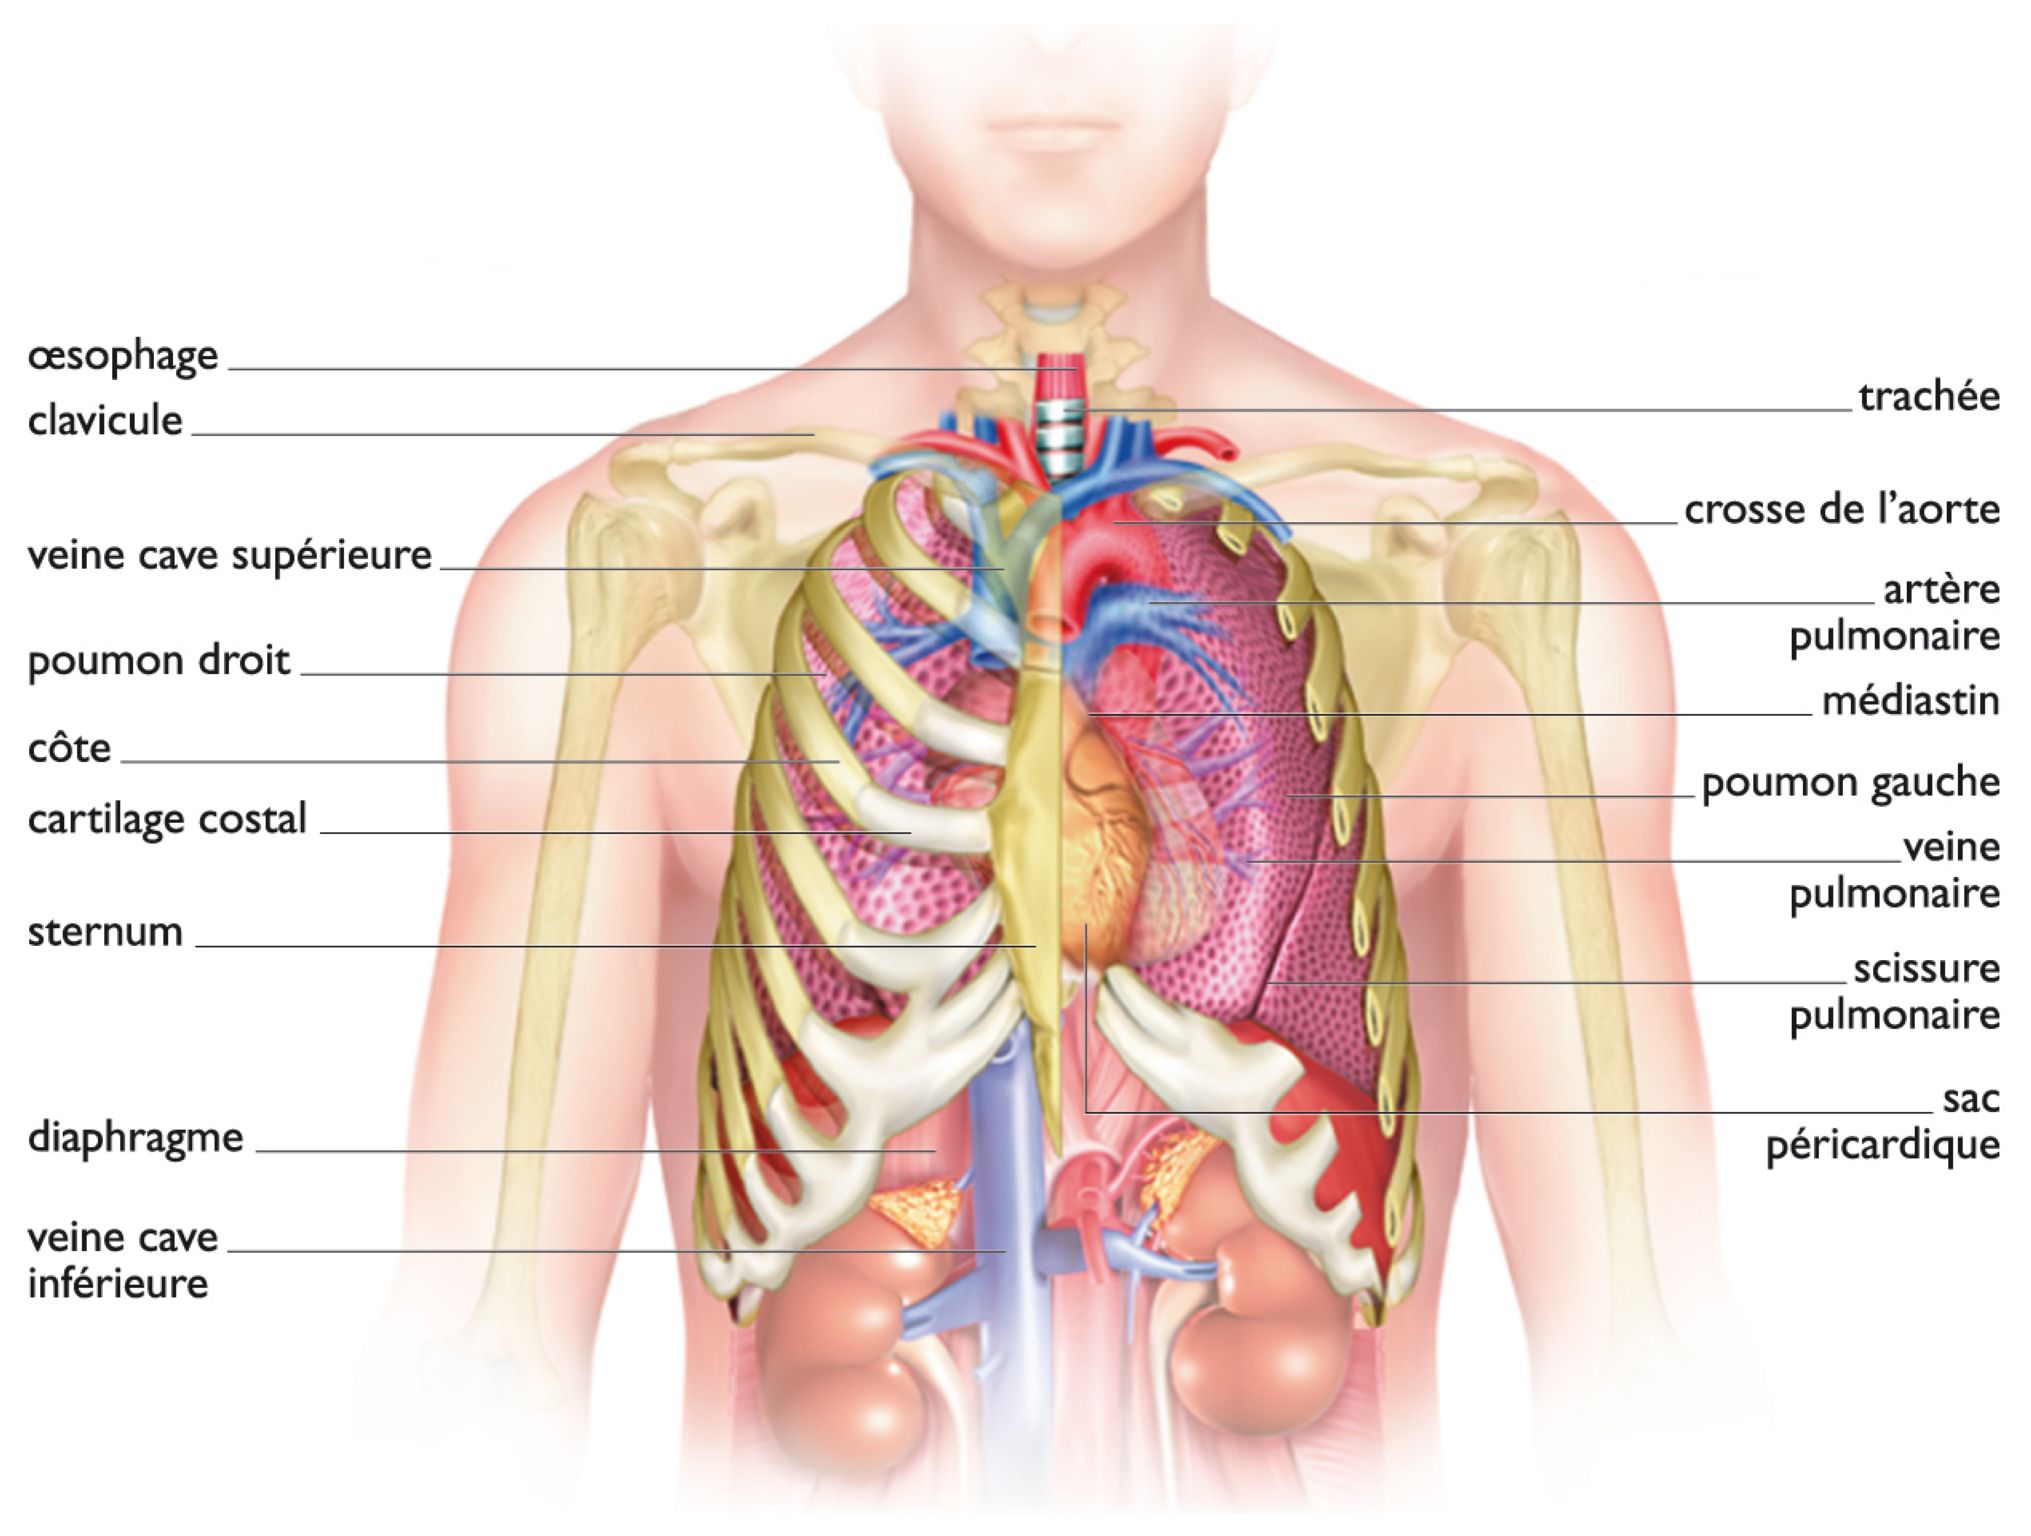 la cage thoracique et les organes du thorax, vus de face